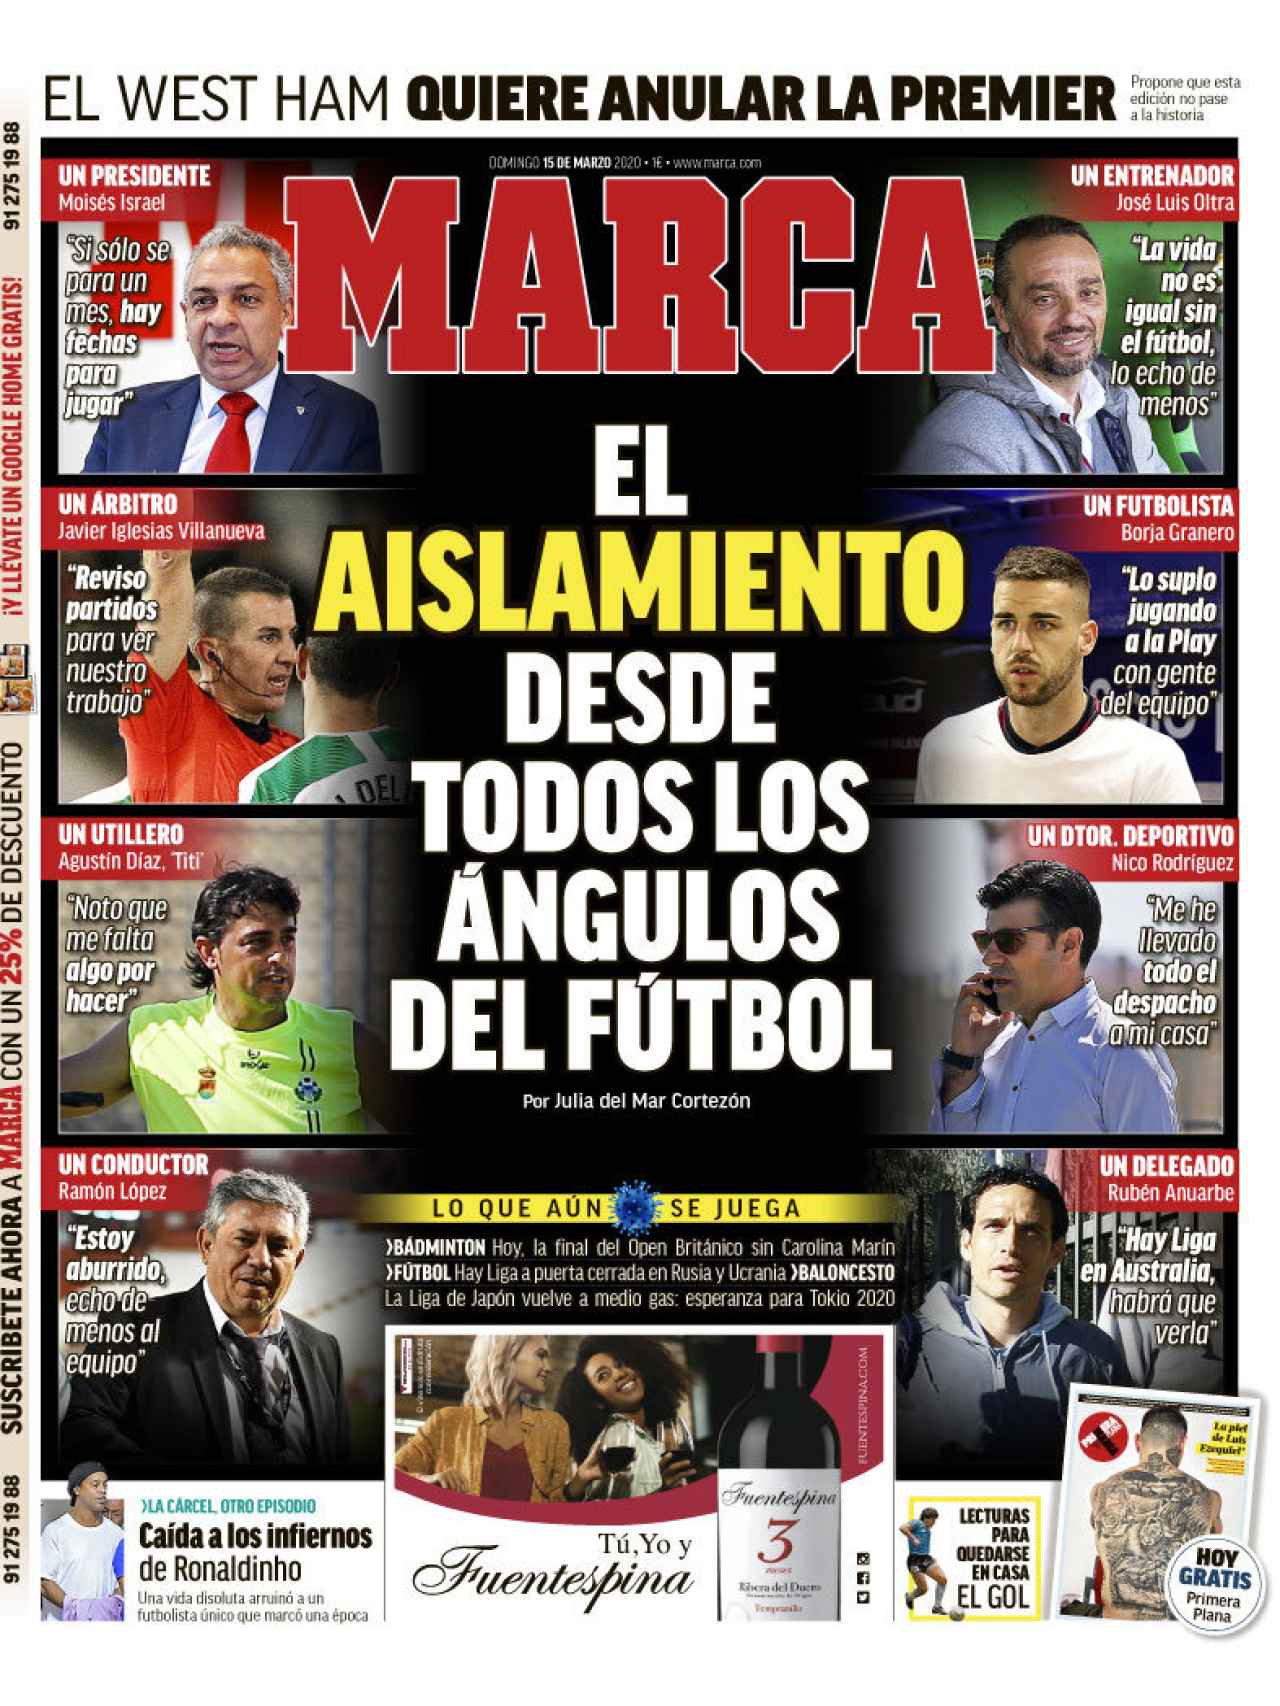 La portada del diario MARCA (15/03/2020)